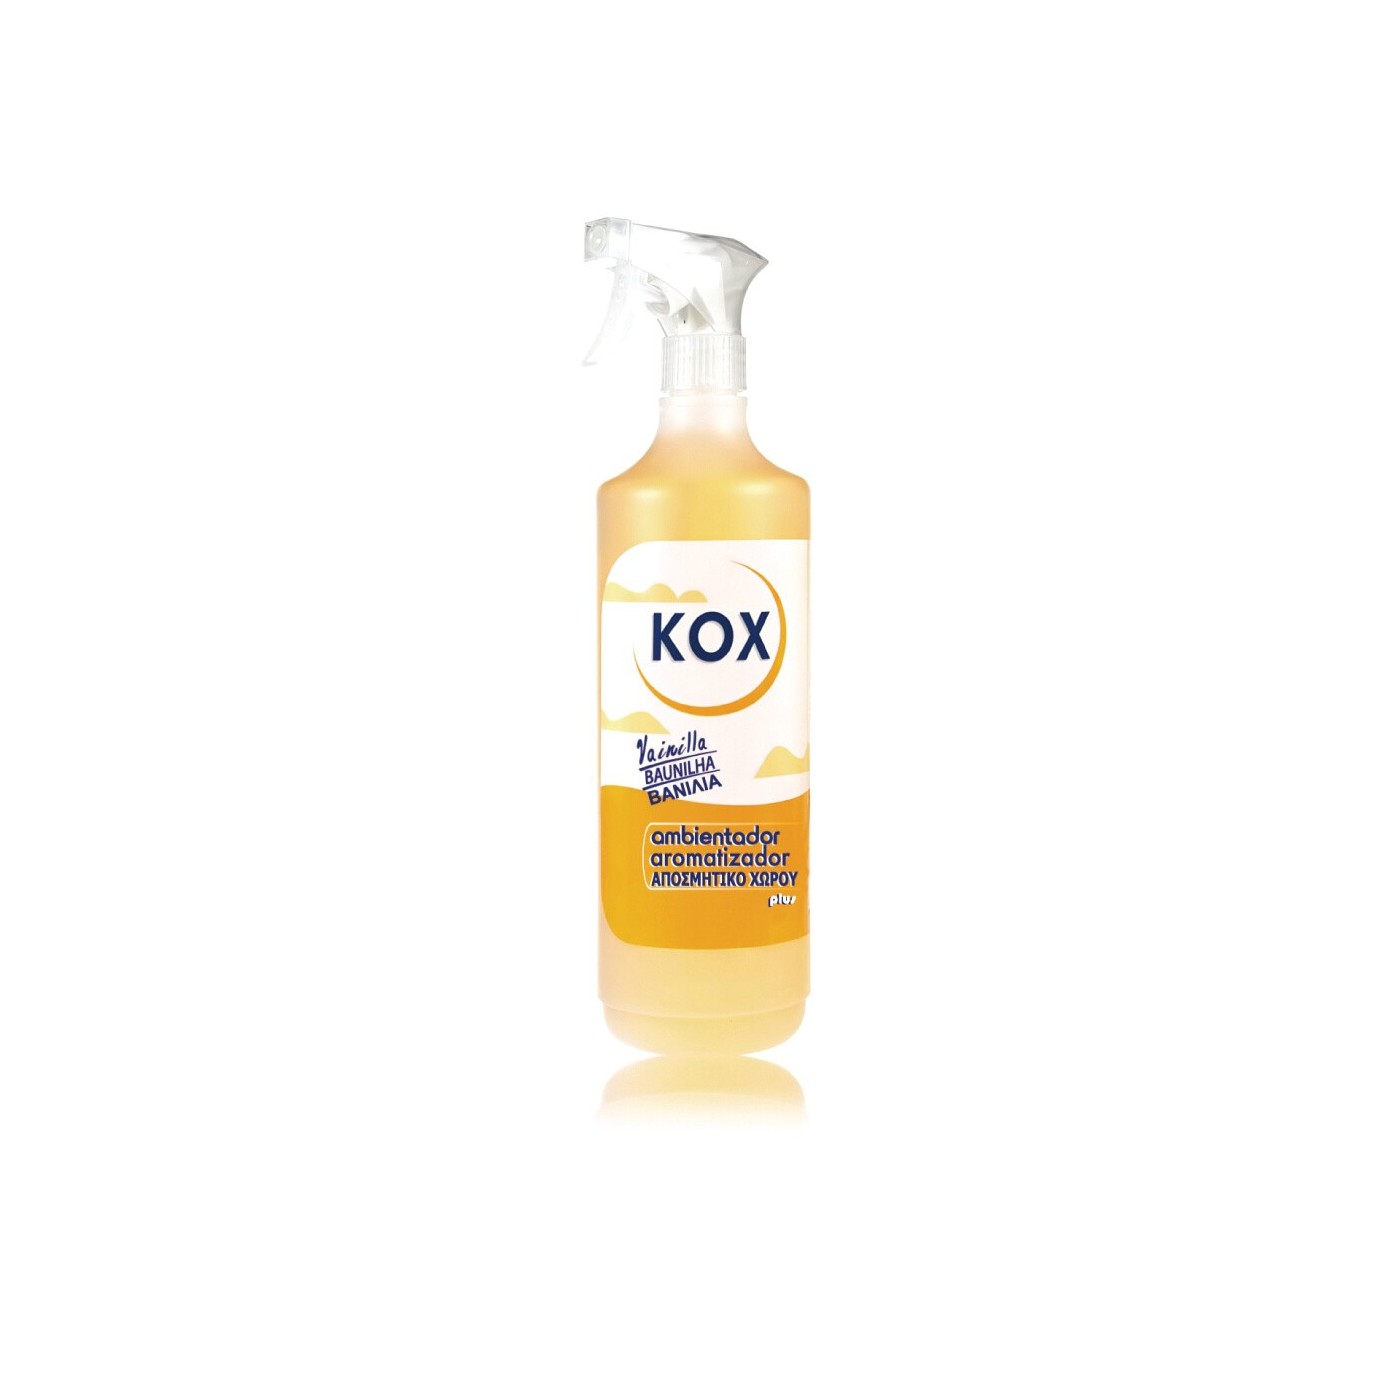 VIOKOX Kox Air Freshenair Spray Vanillia 1LT 10805 | CleanCenter.gr